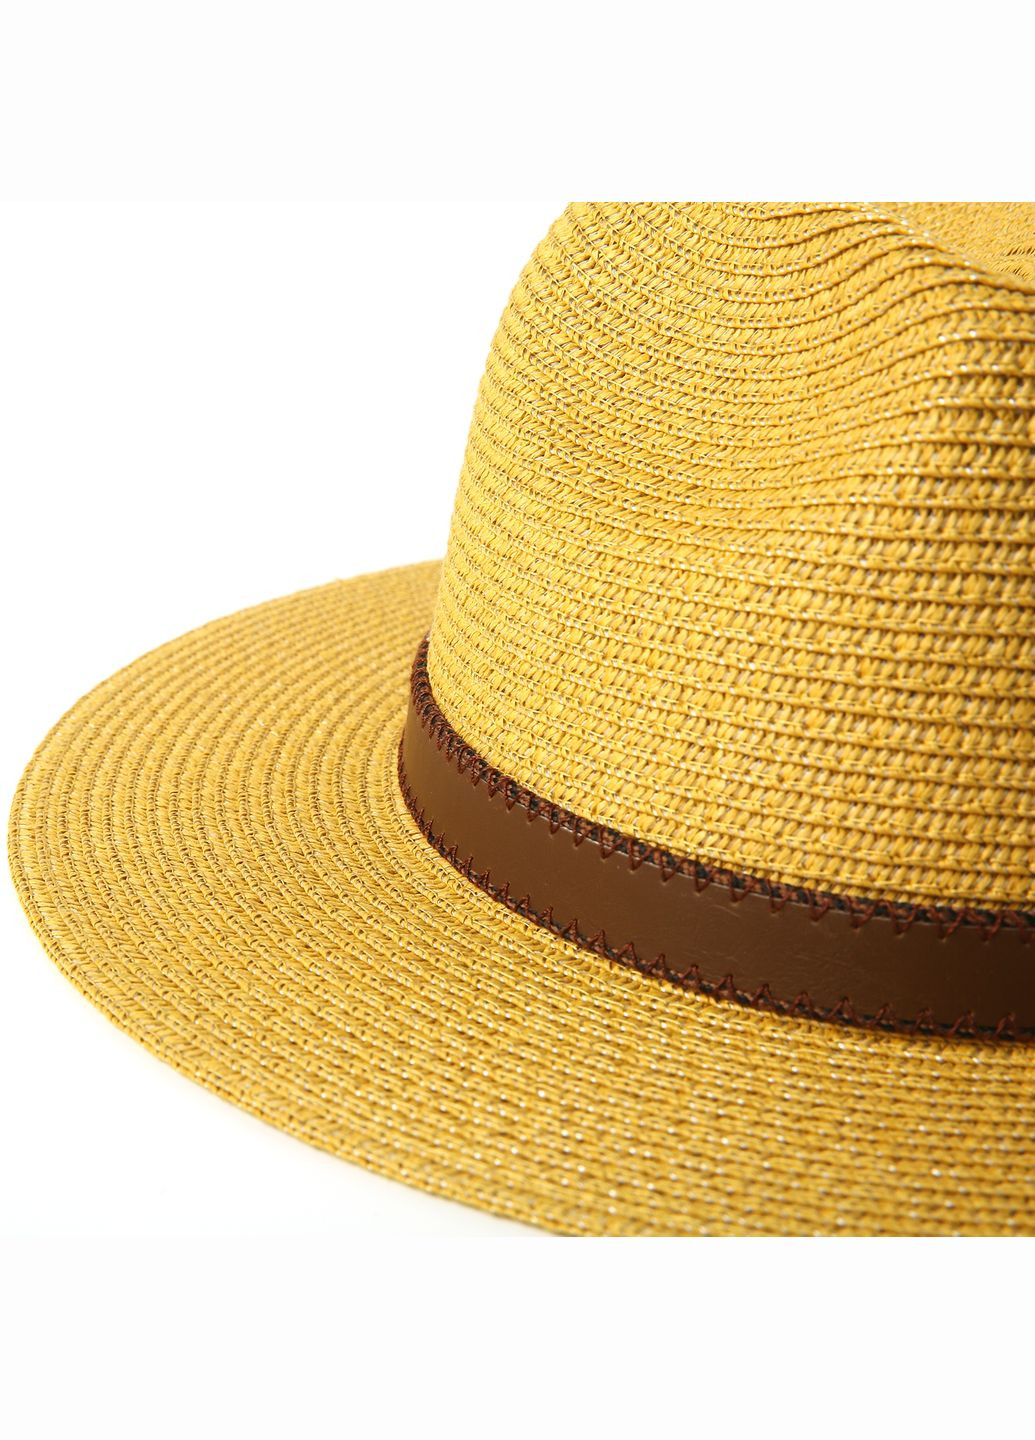 Шляпа федора мужская бумага желтая BAY 843-890 LuckyLOOK 843-890м (289478402)